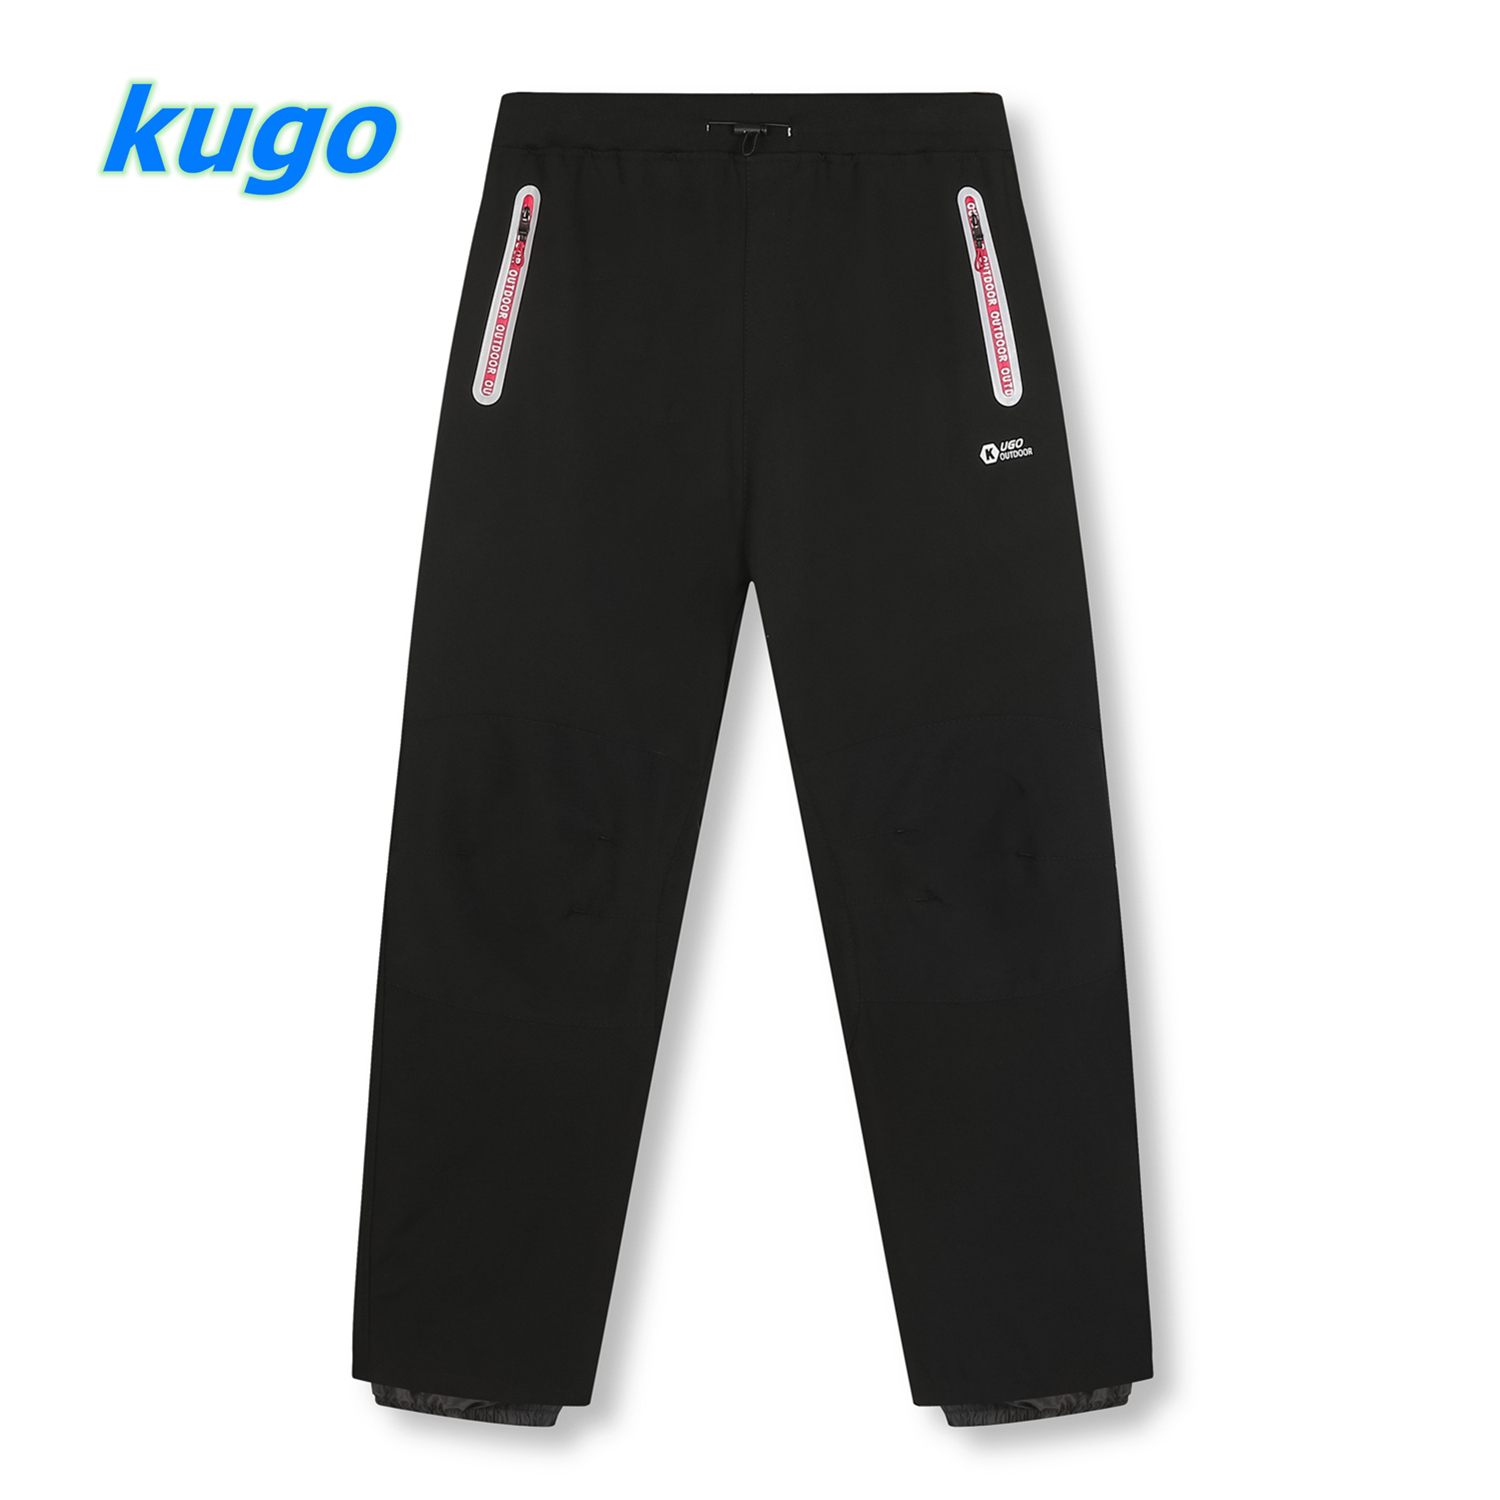 Kugo softshellové kalhoty - nezateplené (HK3077) Barva: Černá s růžovým zipem, Velikost: XL